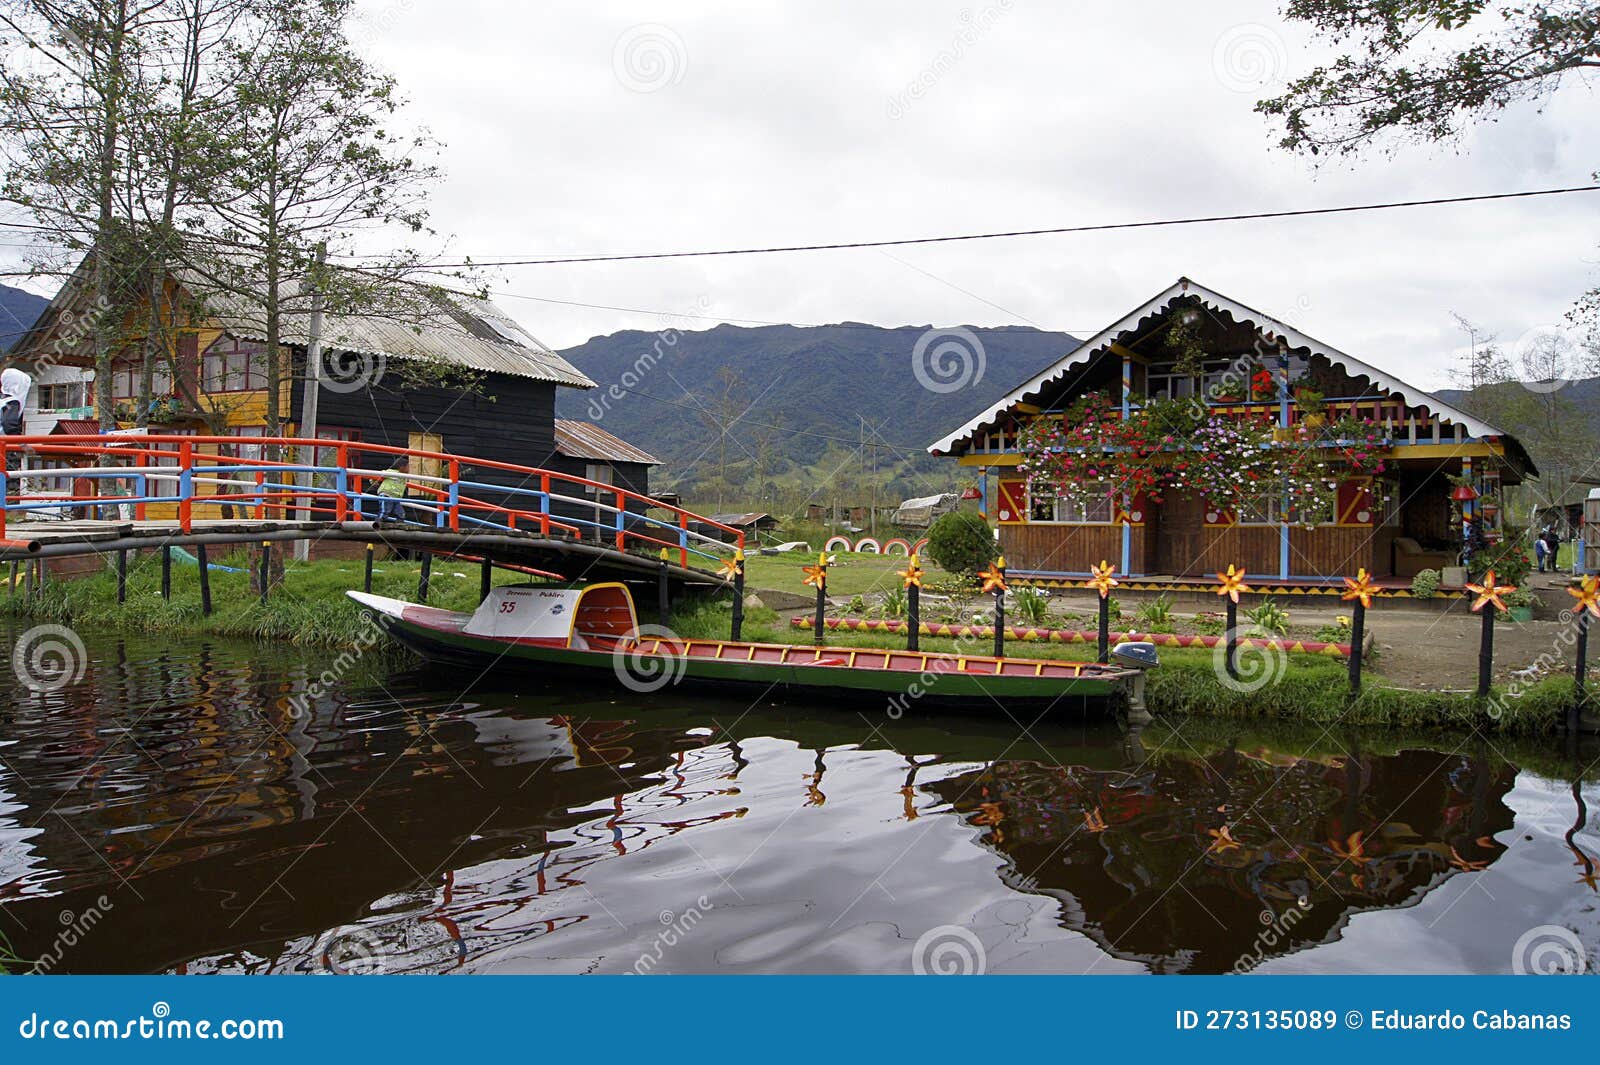 panoramic of laguna de la cocha, pasto, colombia